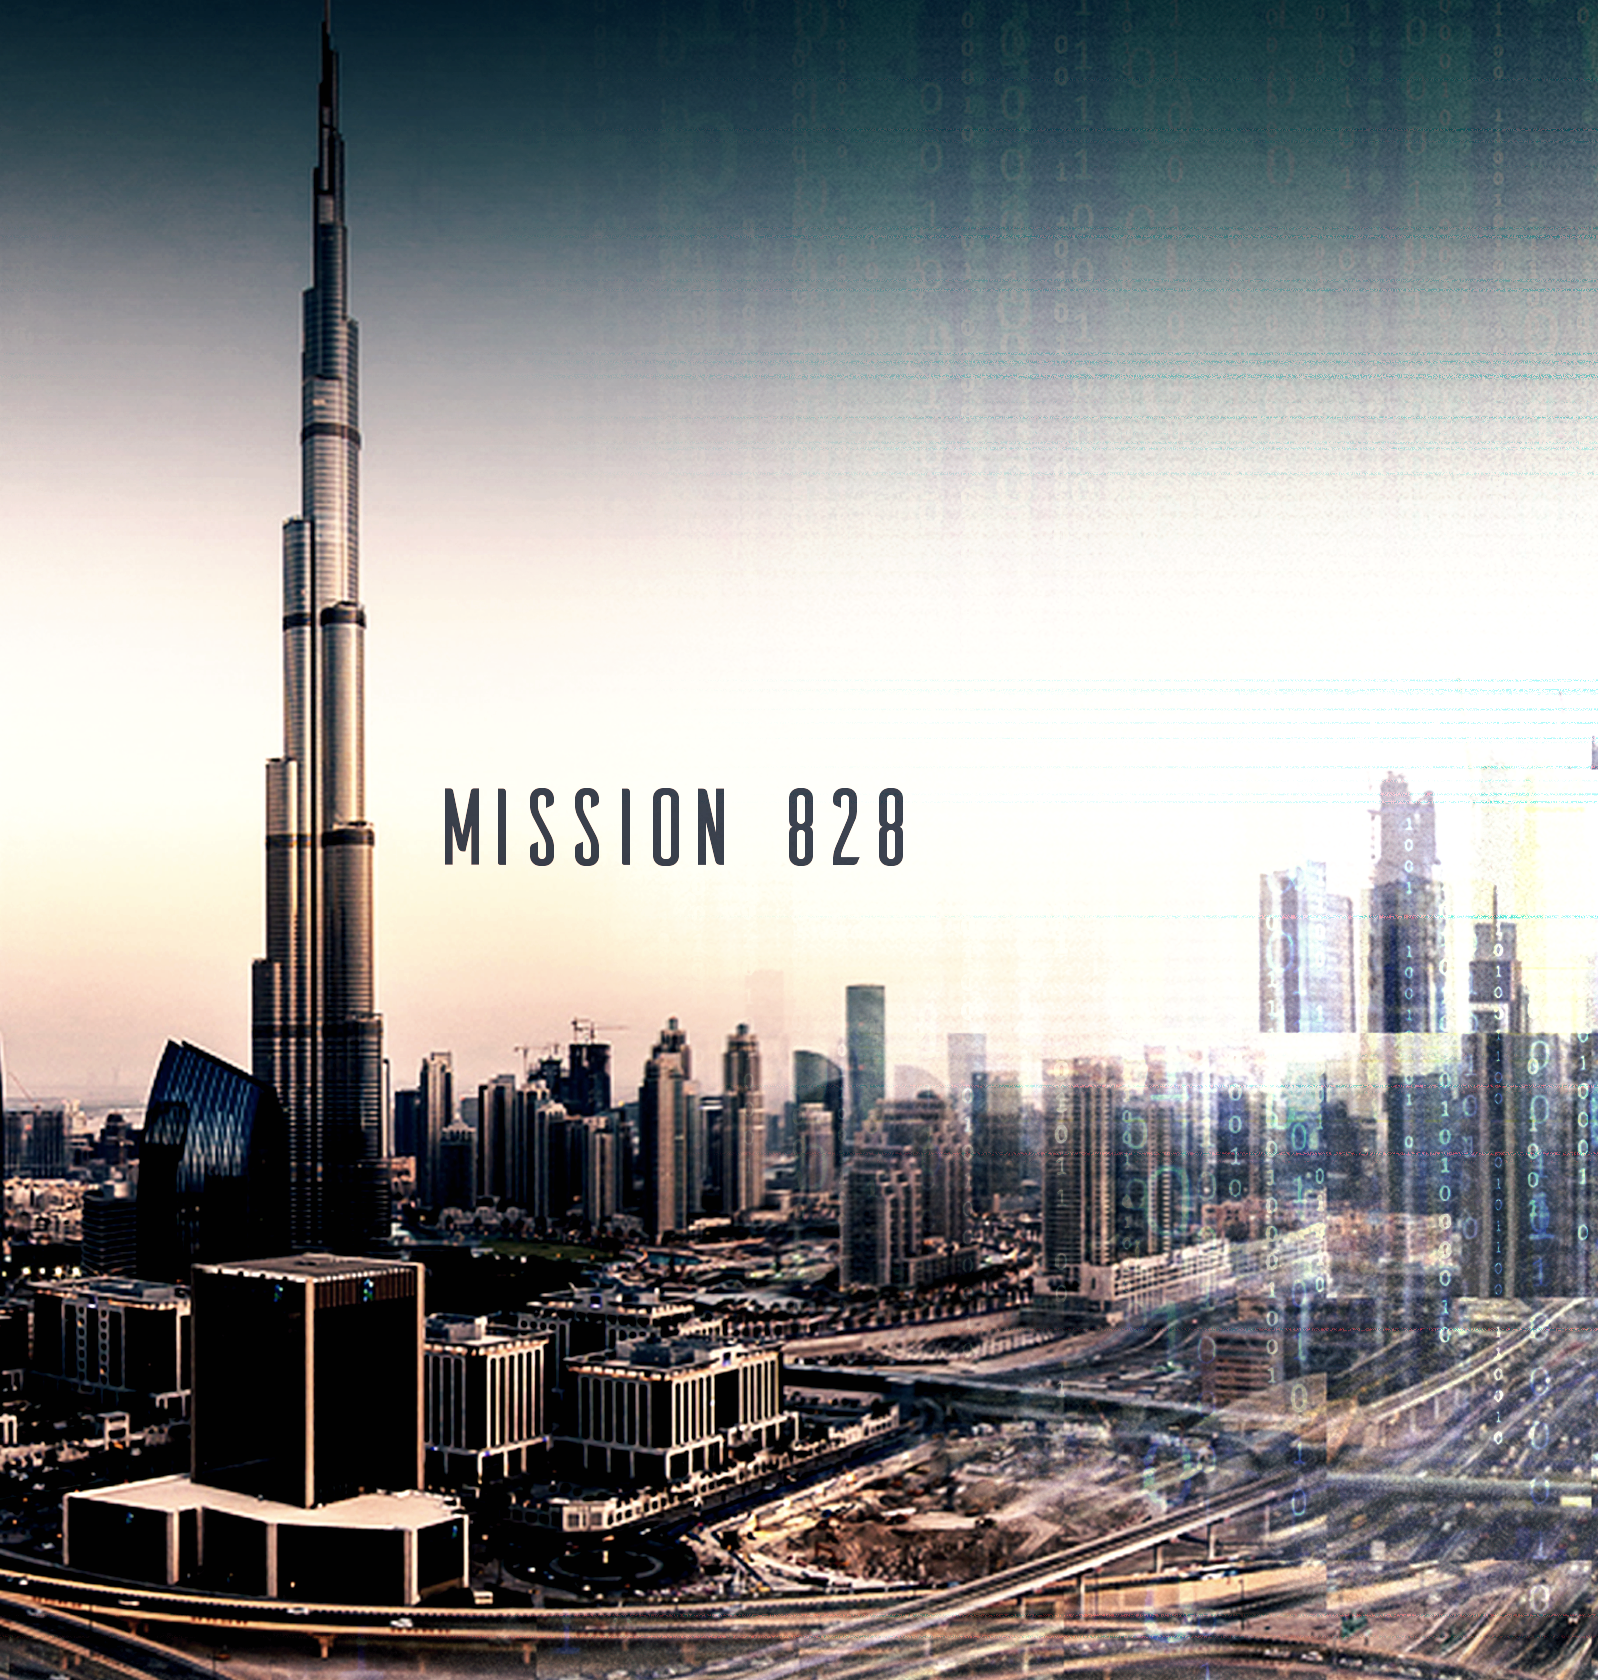 Mission 828